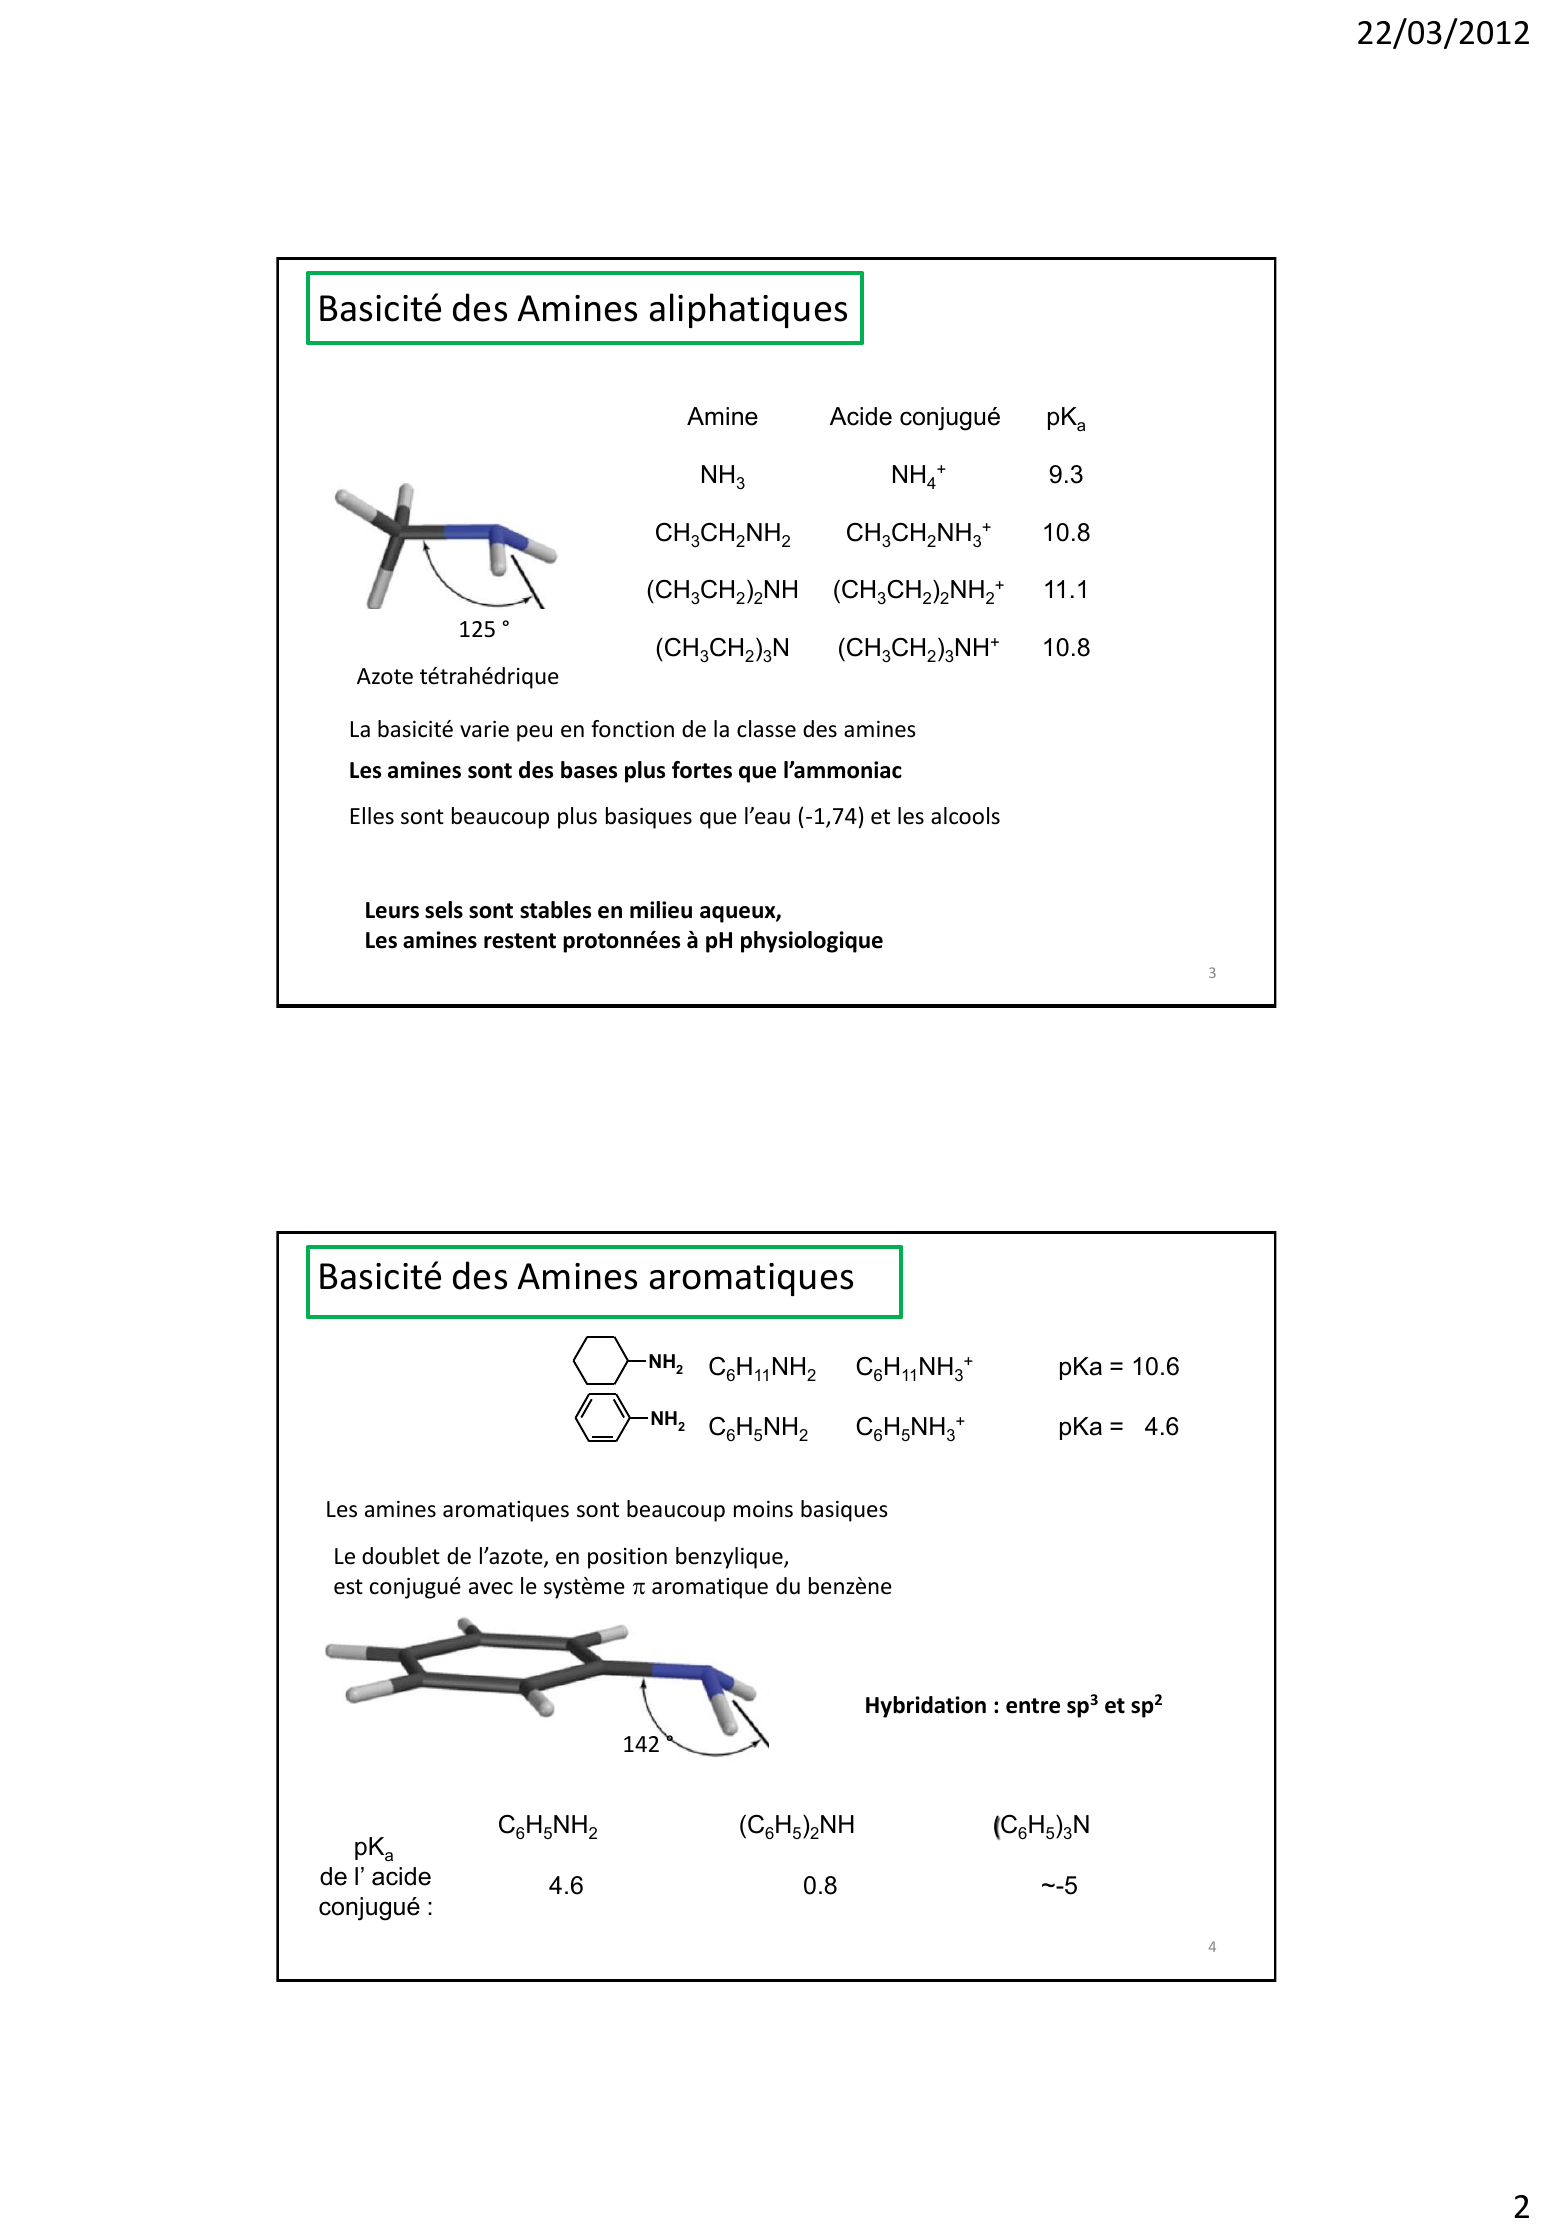 Prévisualisation du document 22/03/2012

Les amines

1

Propriétés Chimiques
Pour les trois classes d'amines

N

La présence d'un doublet